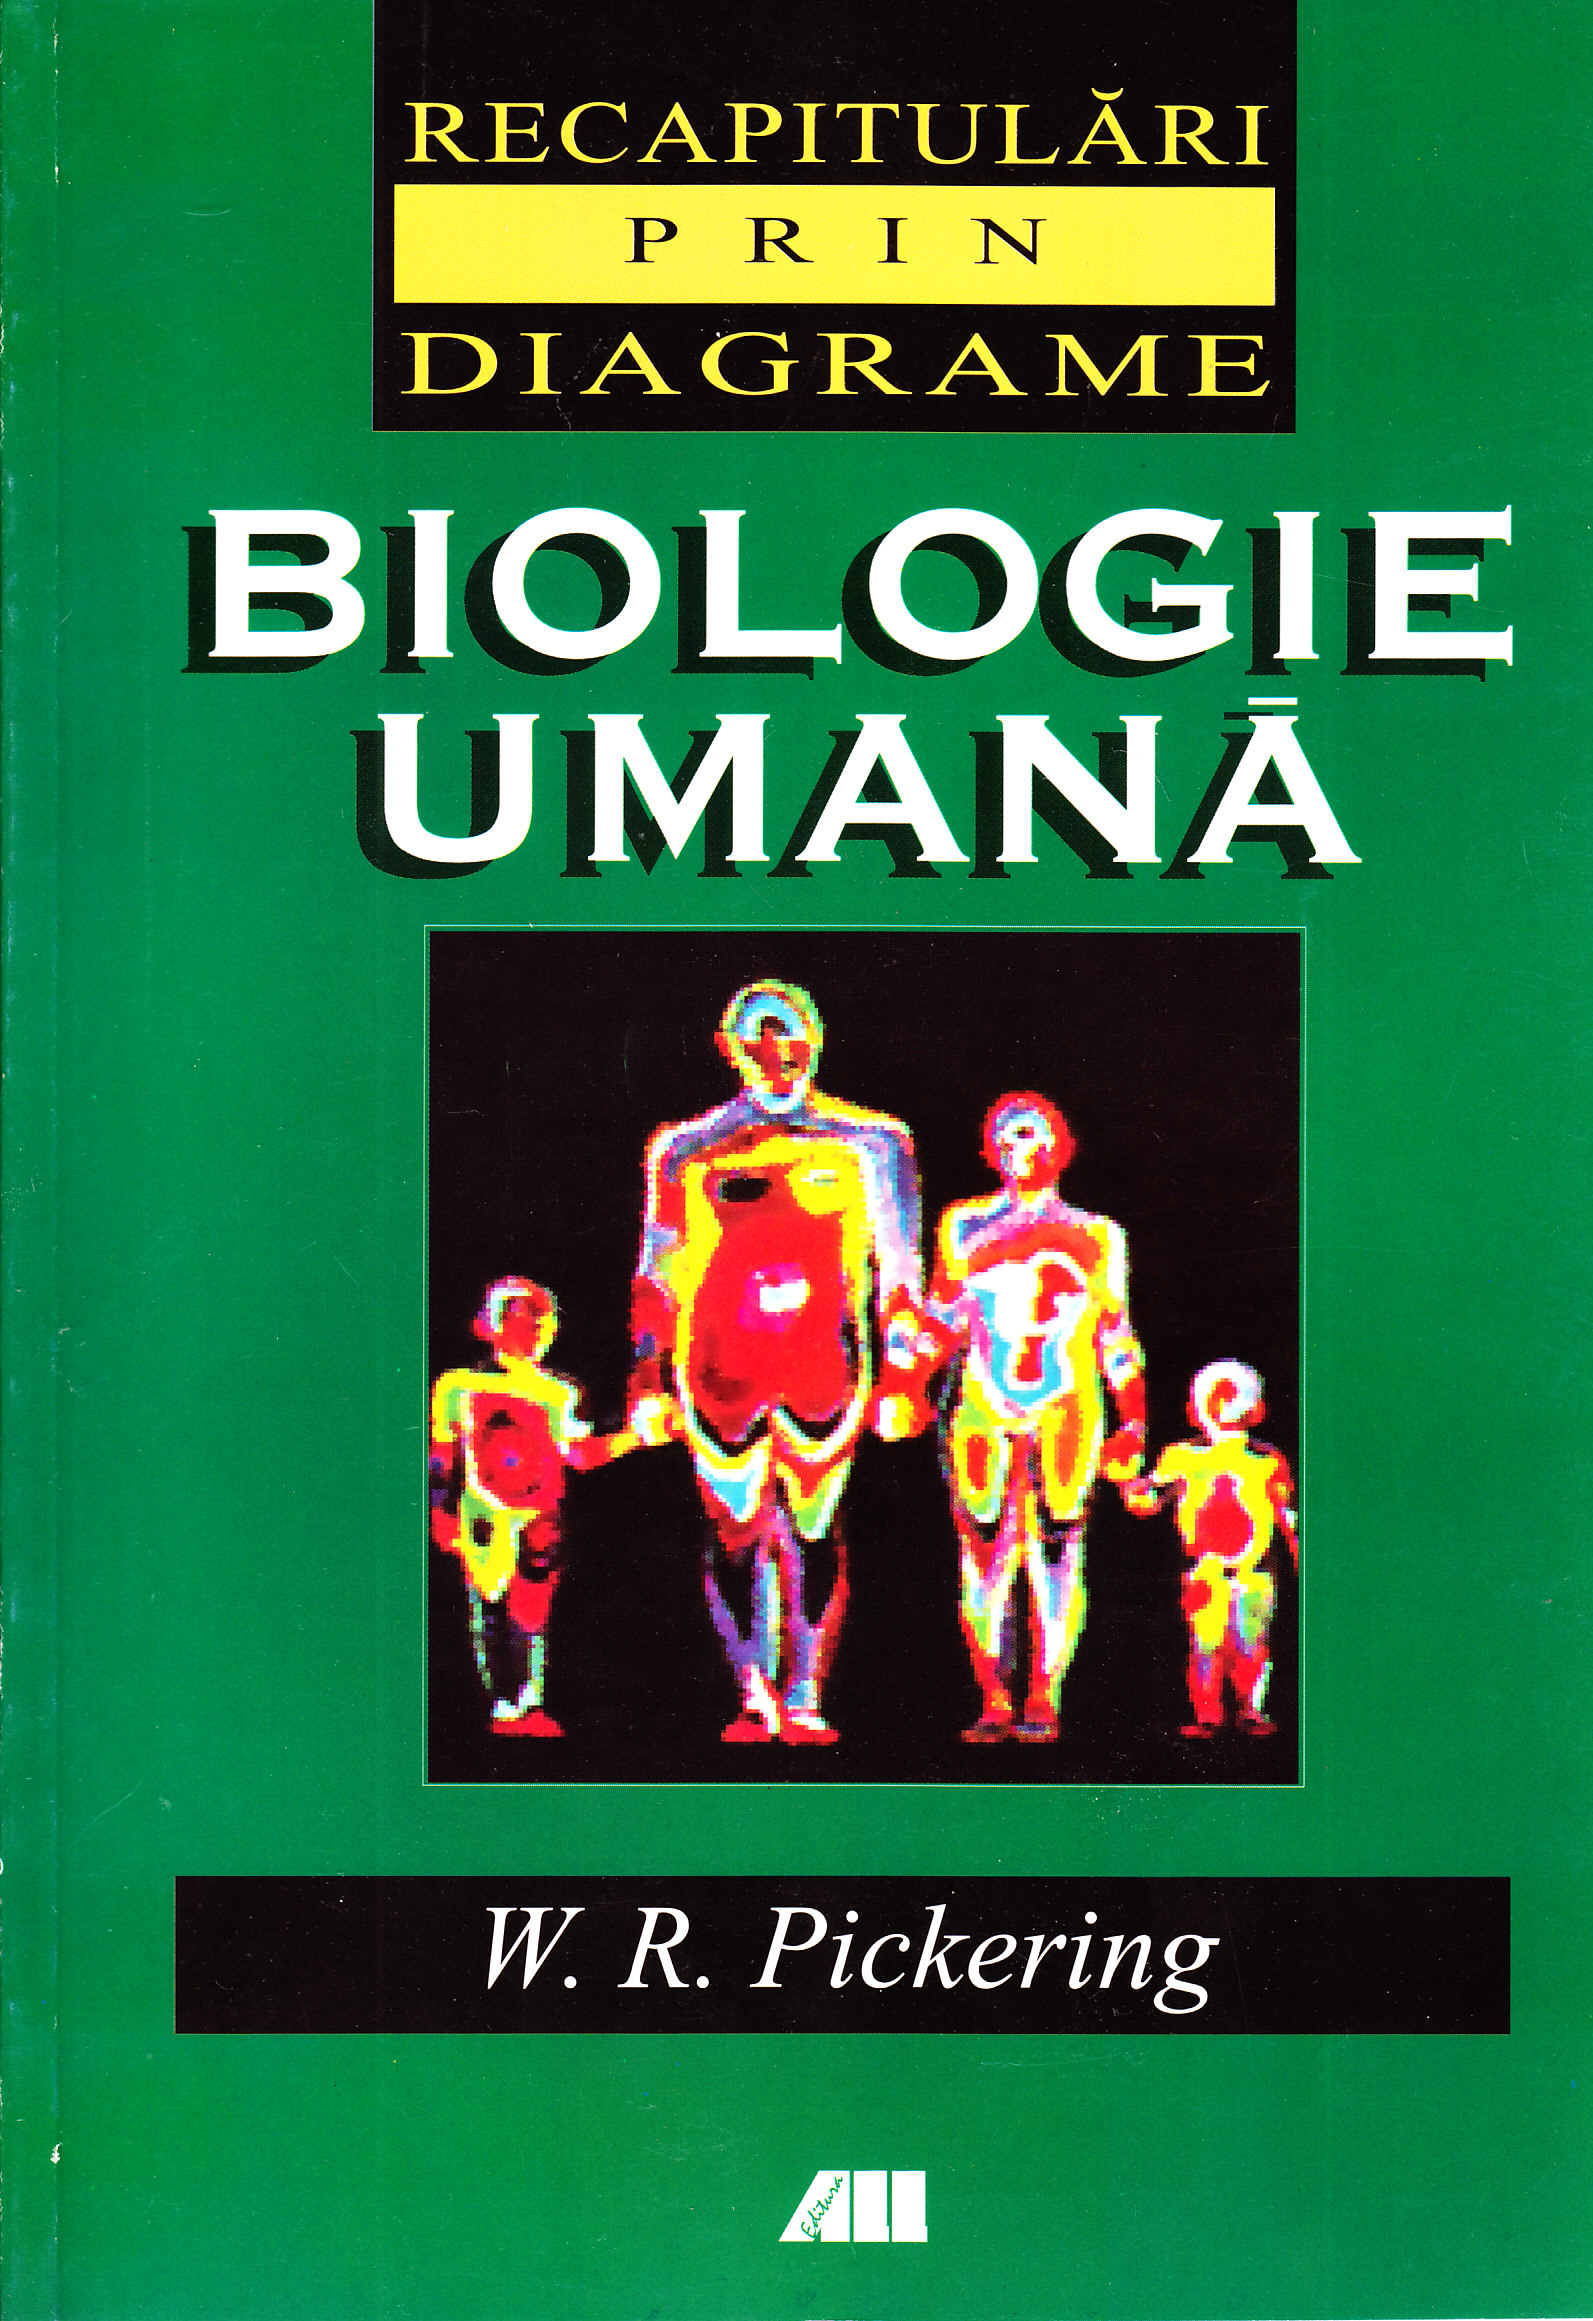 Biologie umana - Recapitulari prin diagrame - W.R. Pickering